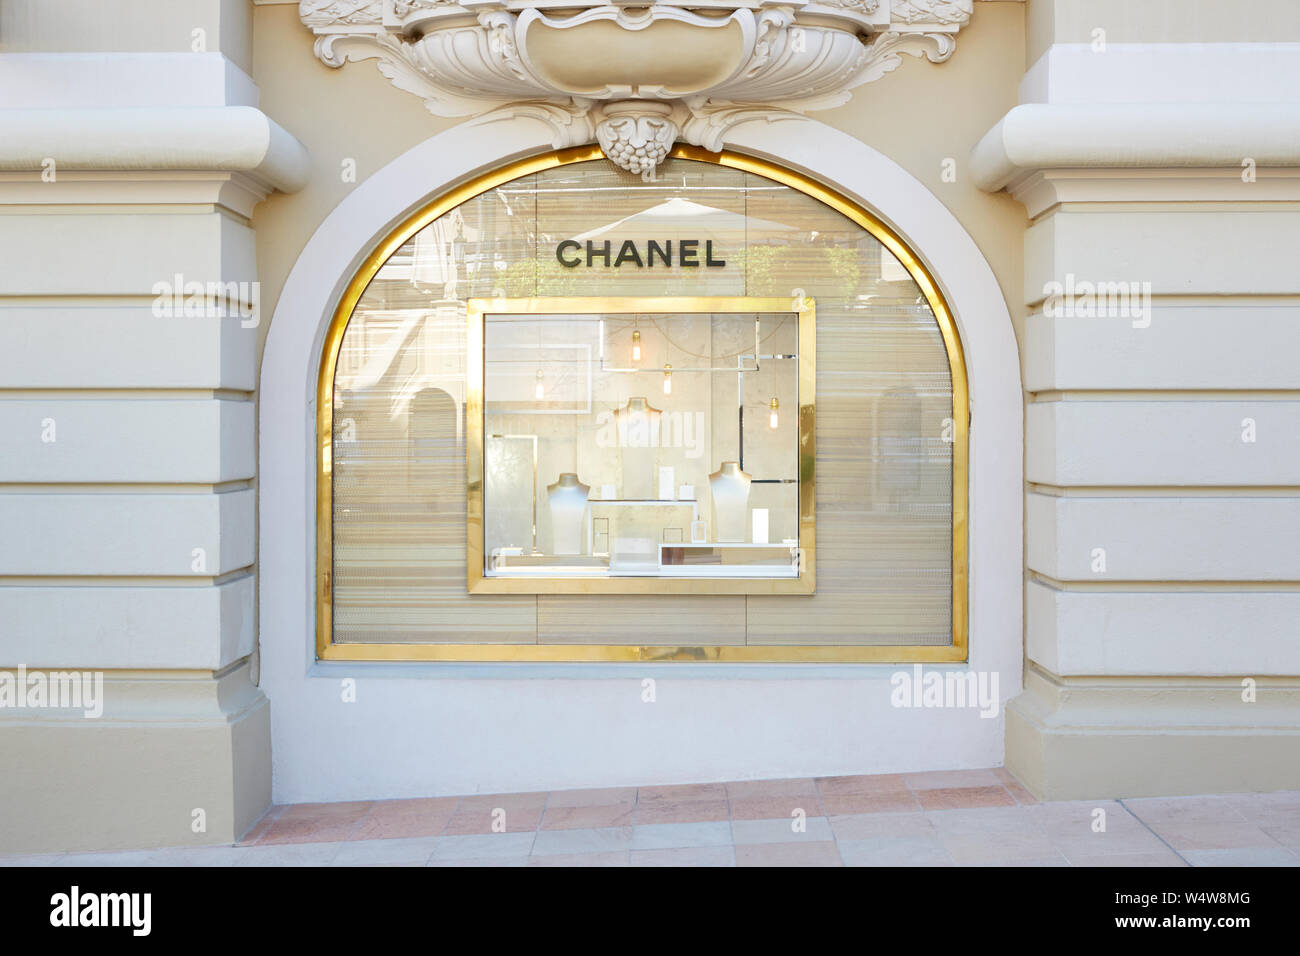 MONTE CARLO, MONACO - 21. AUGUST 2016: Chanel Mode und Schmuck luxus Store Fenster in Monte Carlo, Monaco. Stockfoto